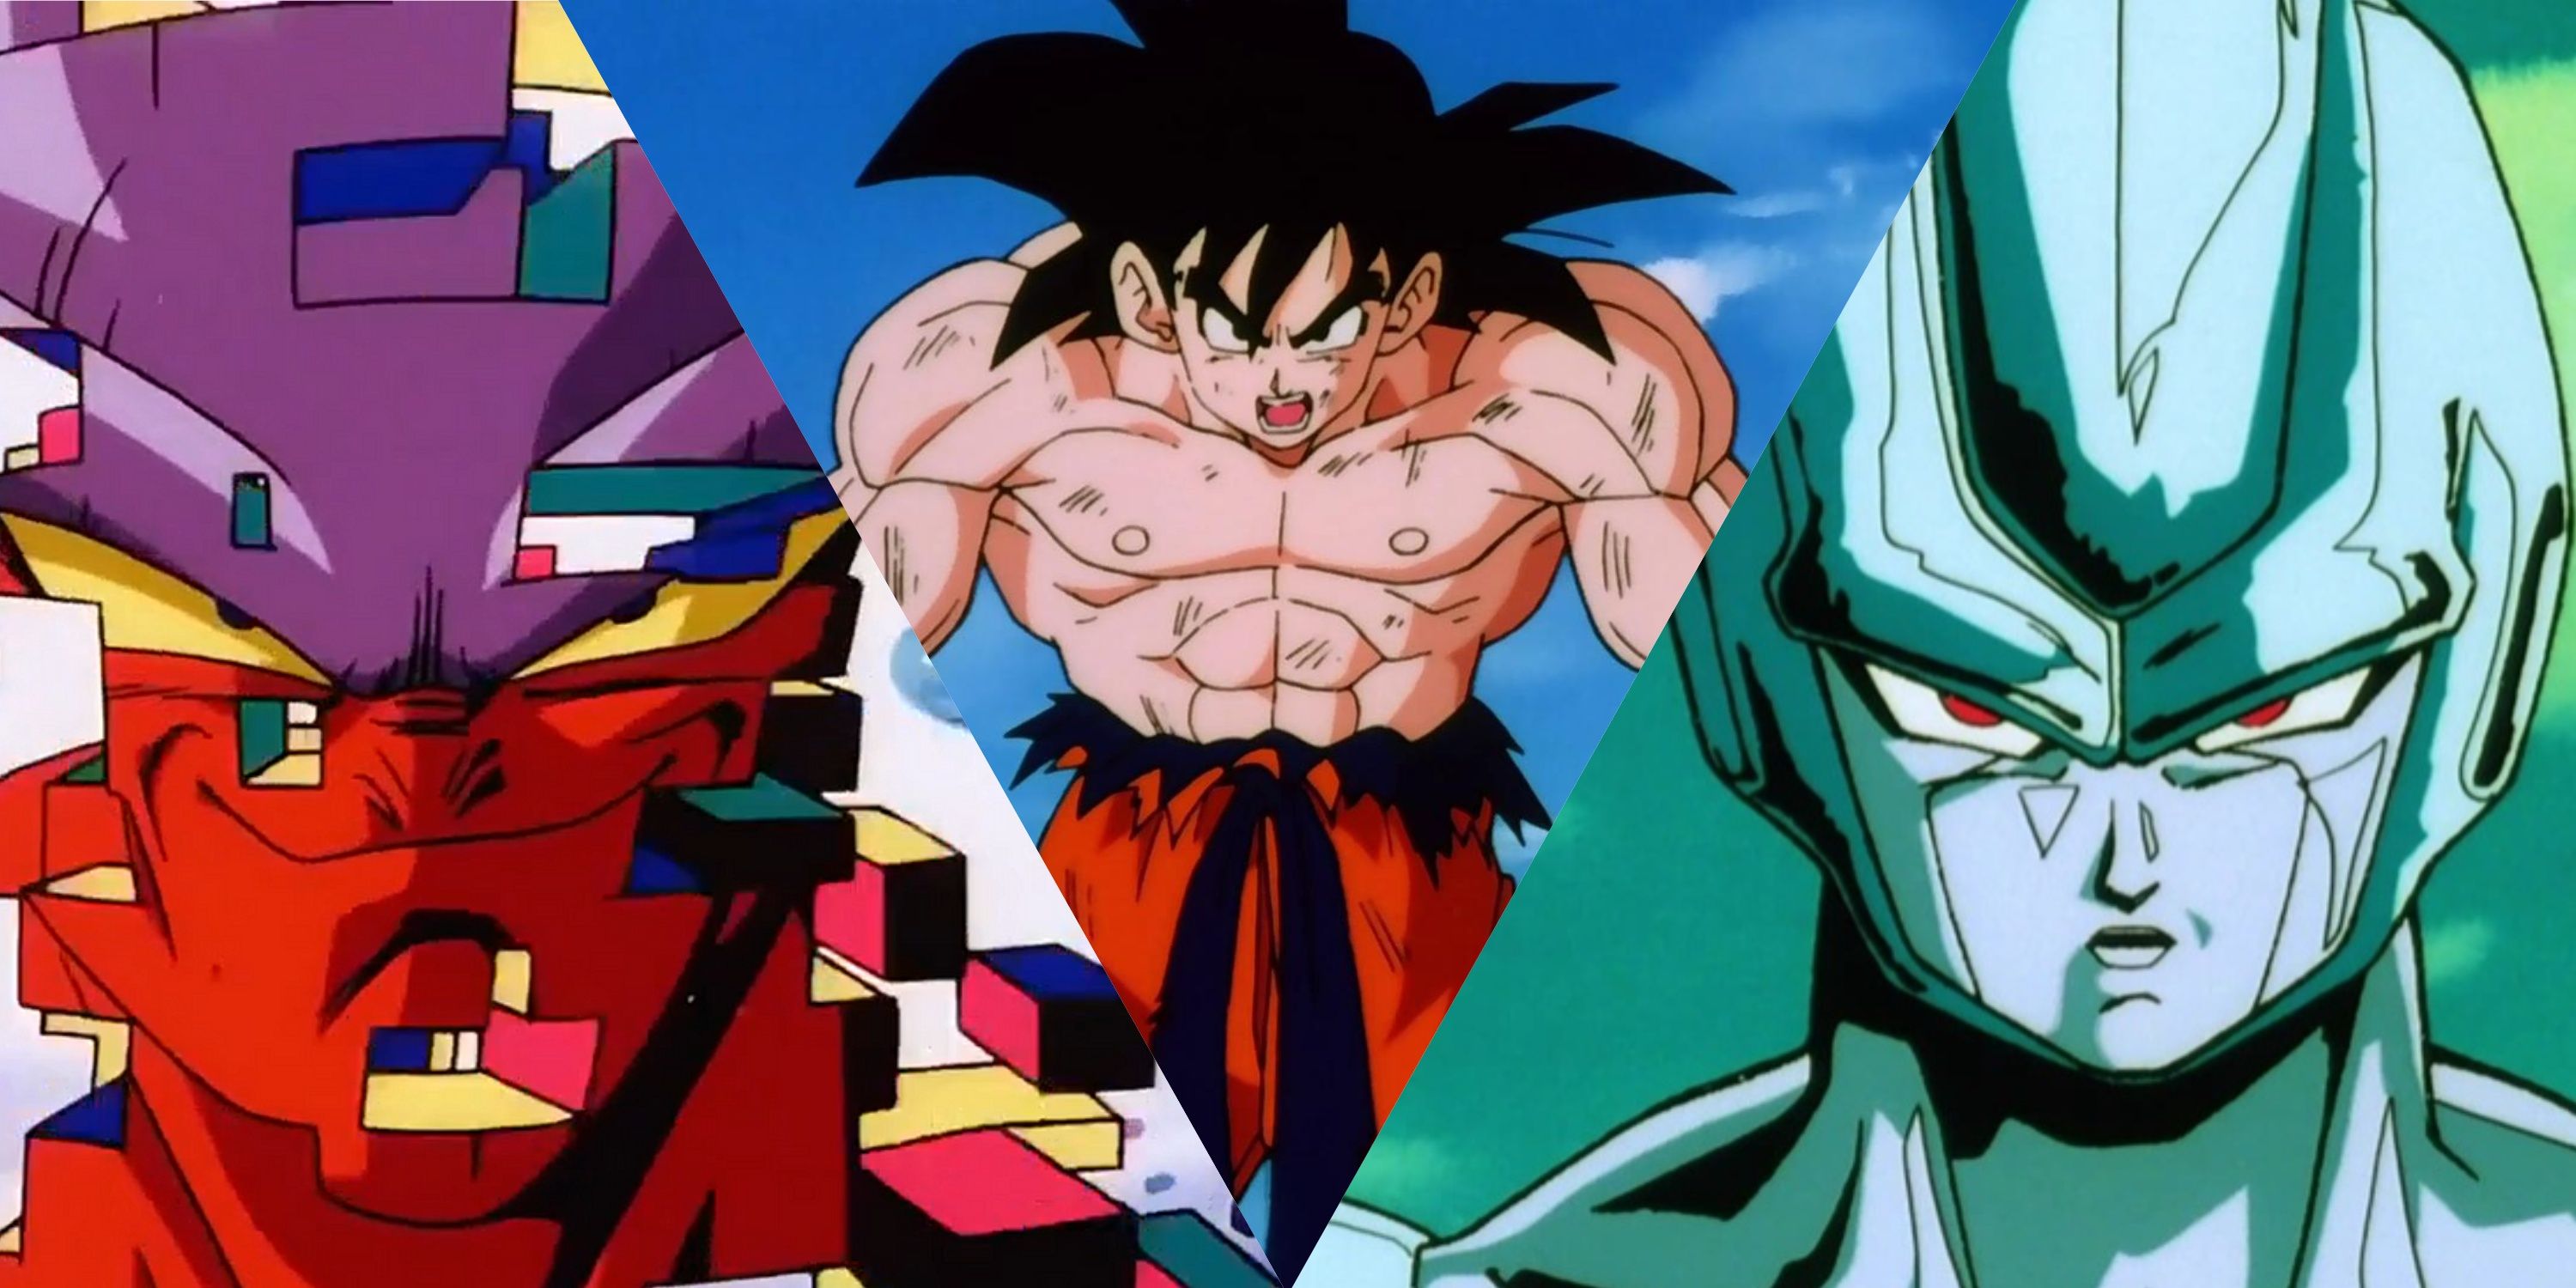 Janemba, Goku, and Cooler